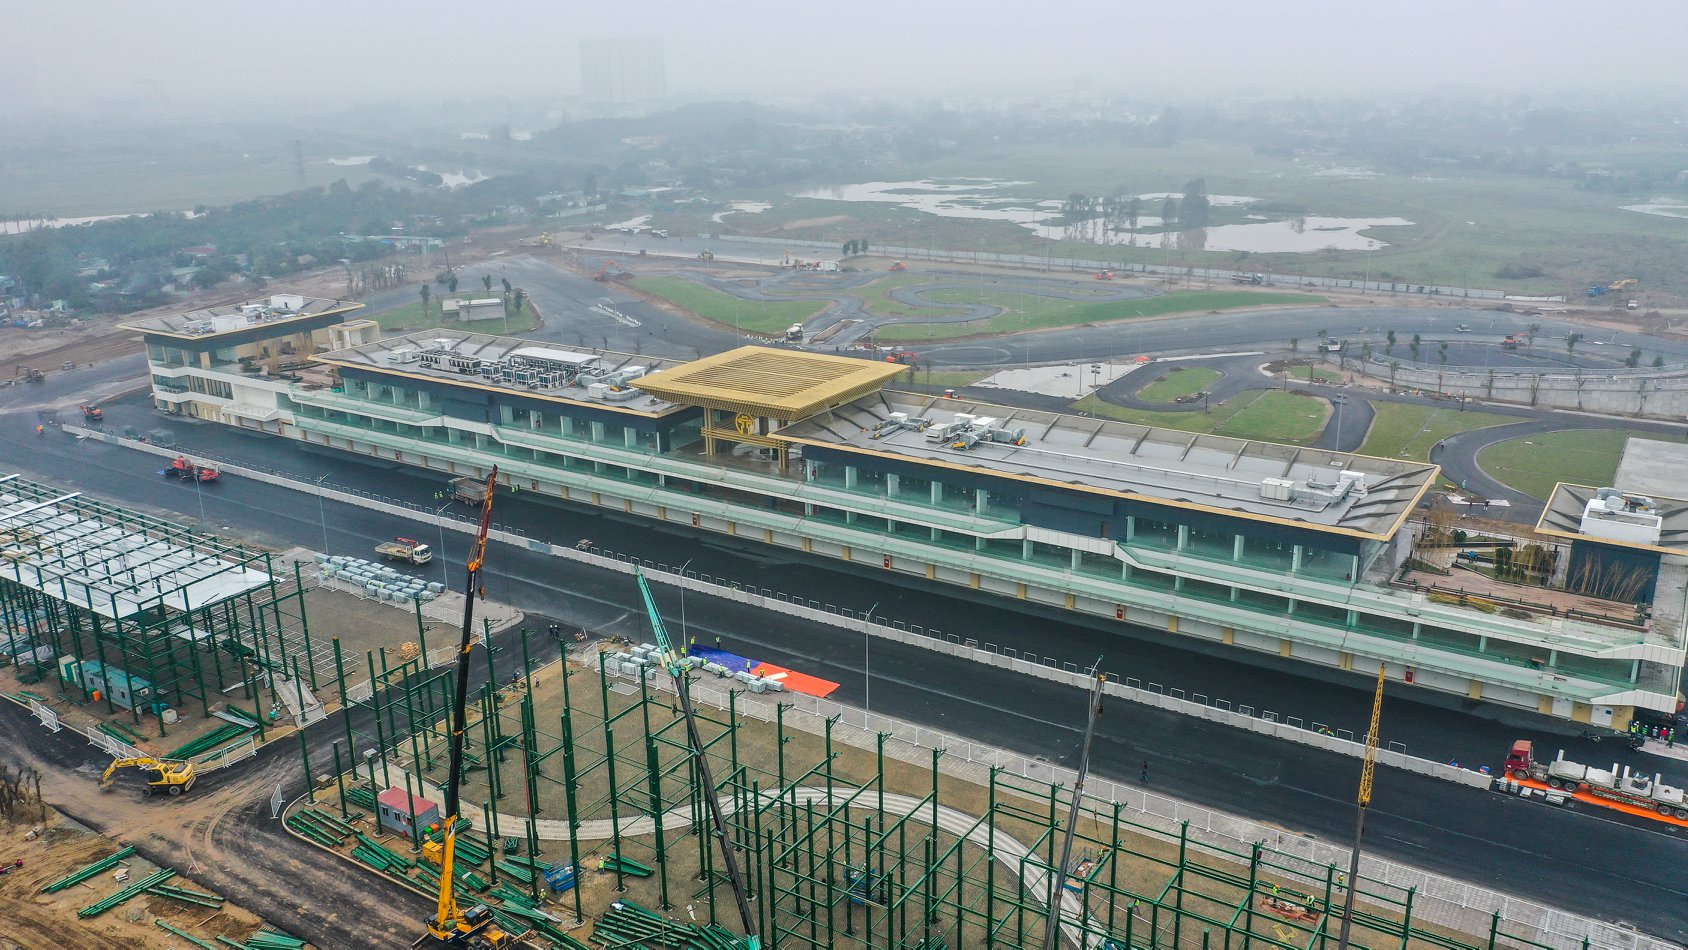 Đường đua F1 Việt Nam gấp rút xây dựng để kịp ngày tranh tài